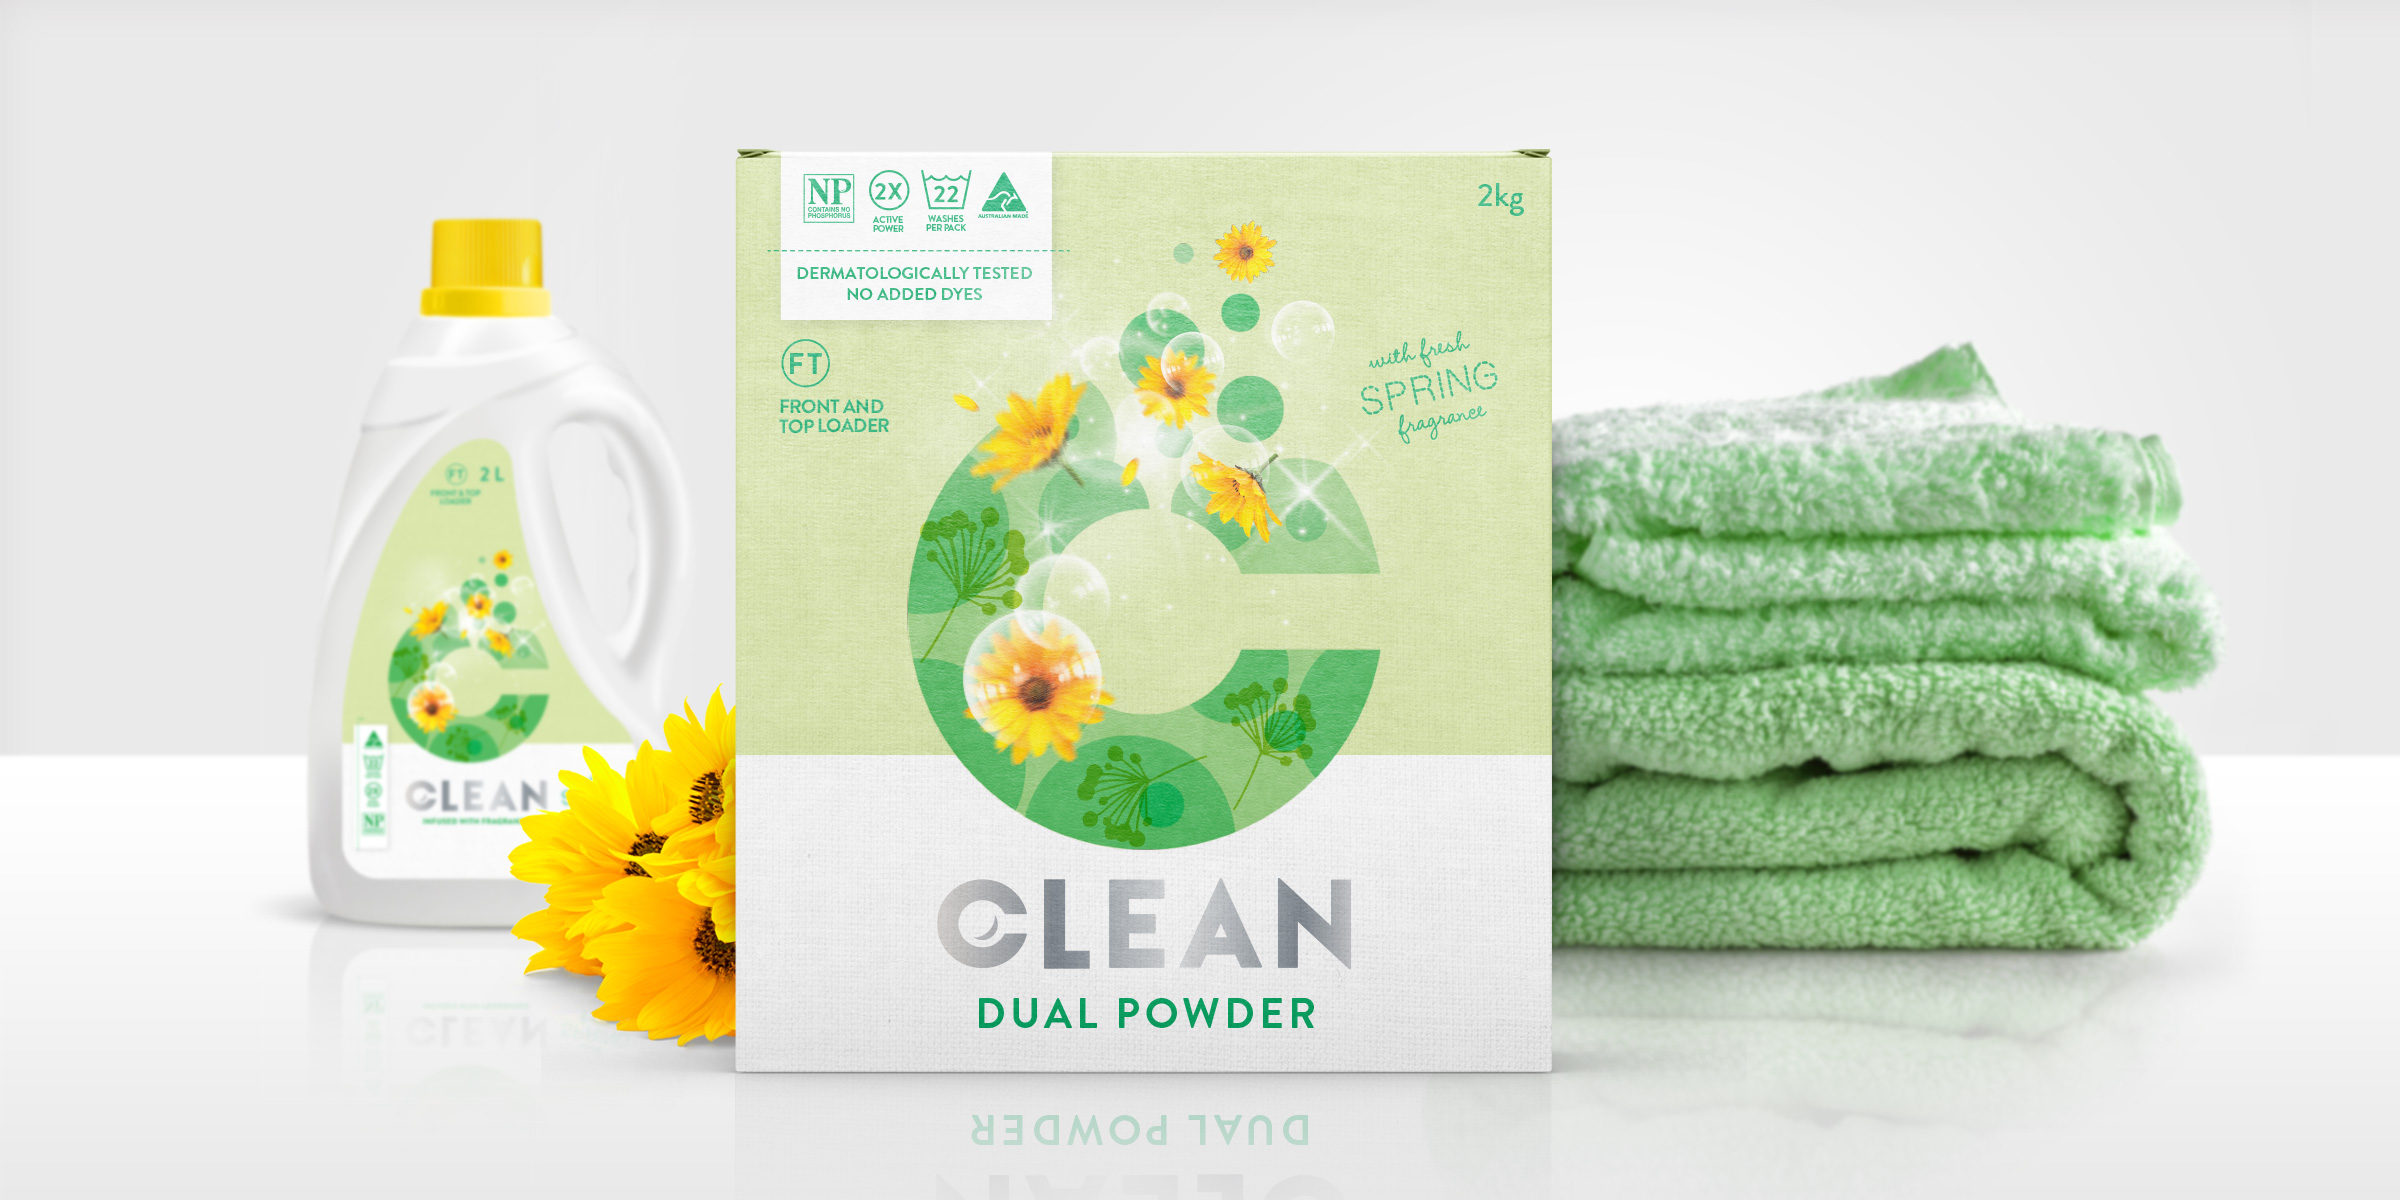 Clean-woolworth's-spring-green-packaging-branding-desing-range